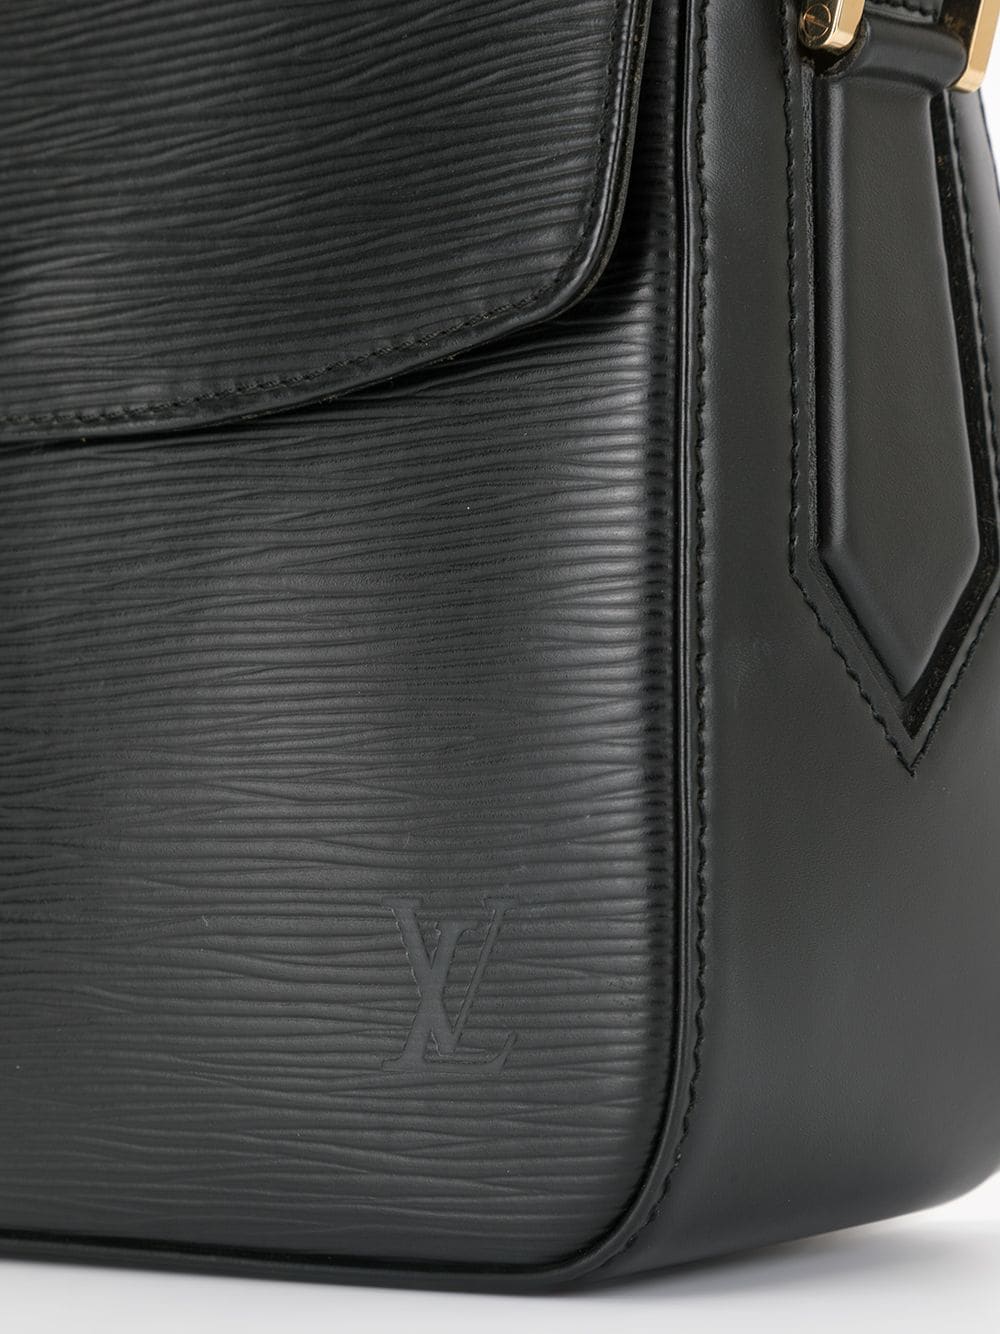 Louis Vuitton Black Epi Leather Buci Bag